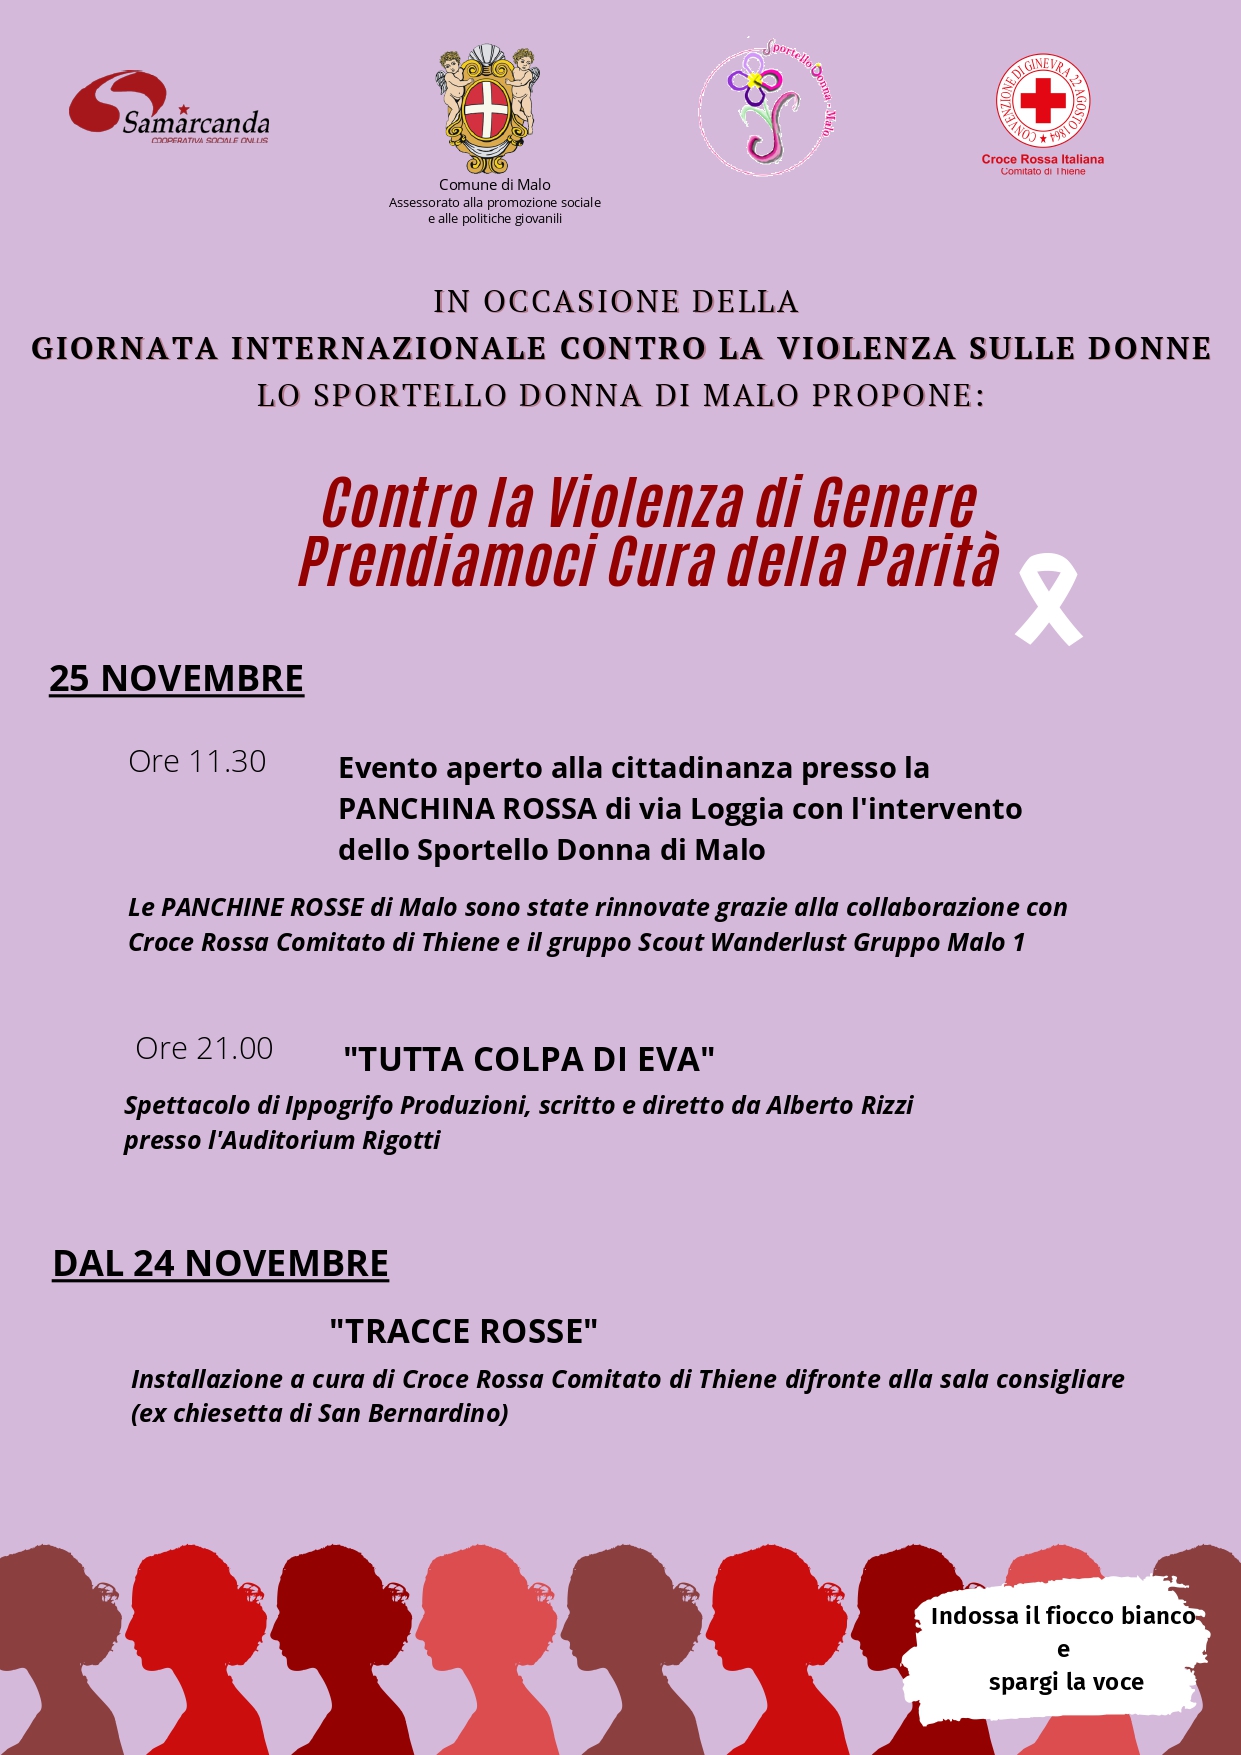 Giornata Internazionale contro la violenza sulle donne - Iniziative dell'Assessorato al Sociale e Sportello Donna